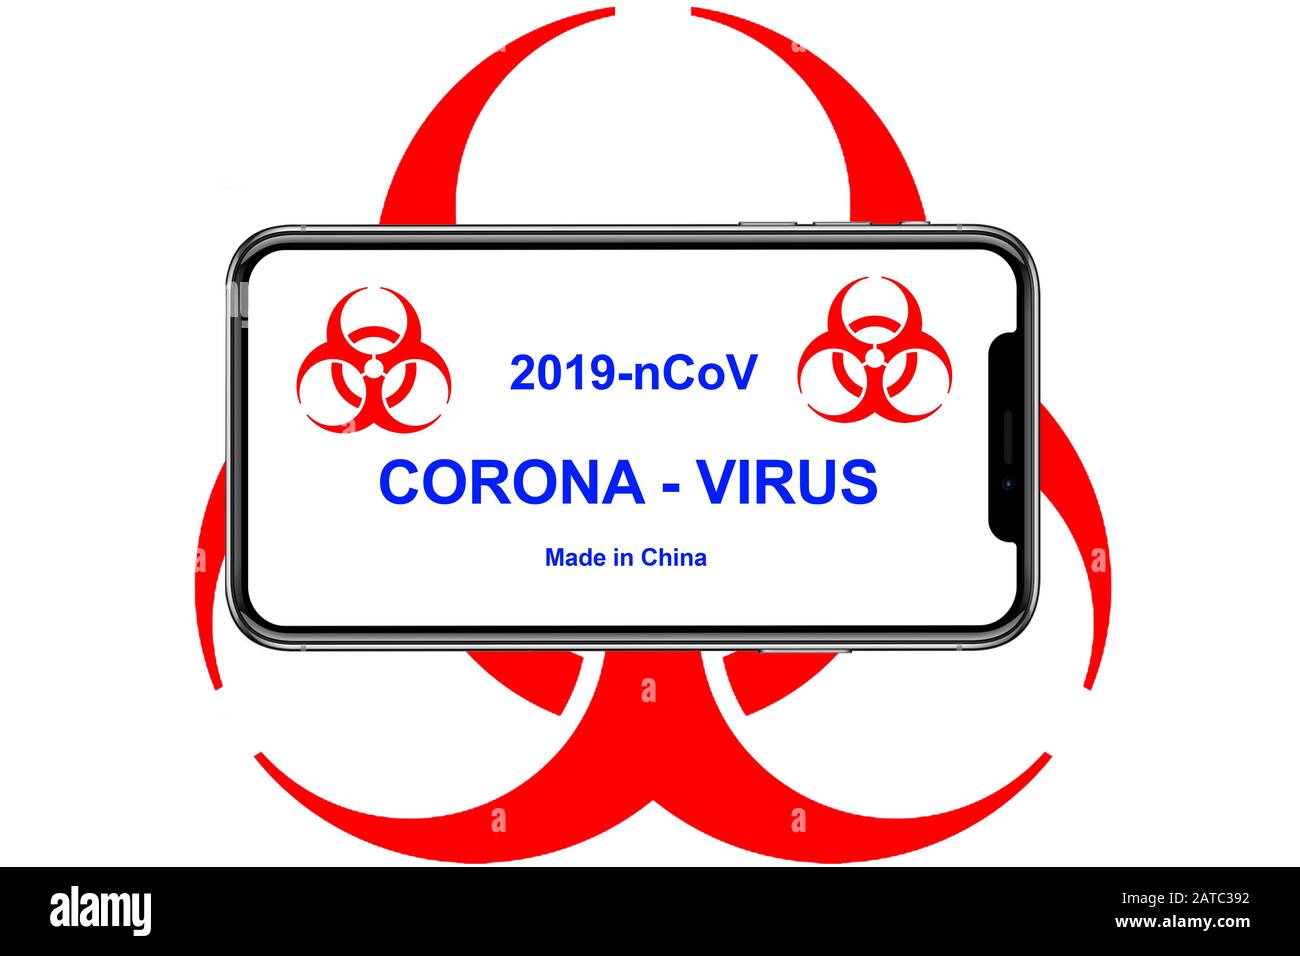 Handy, Biohazard, Corona-Virus, 2019-nCoV Stock Photo